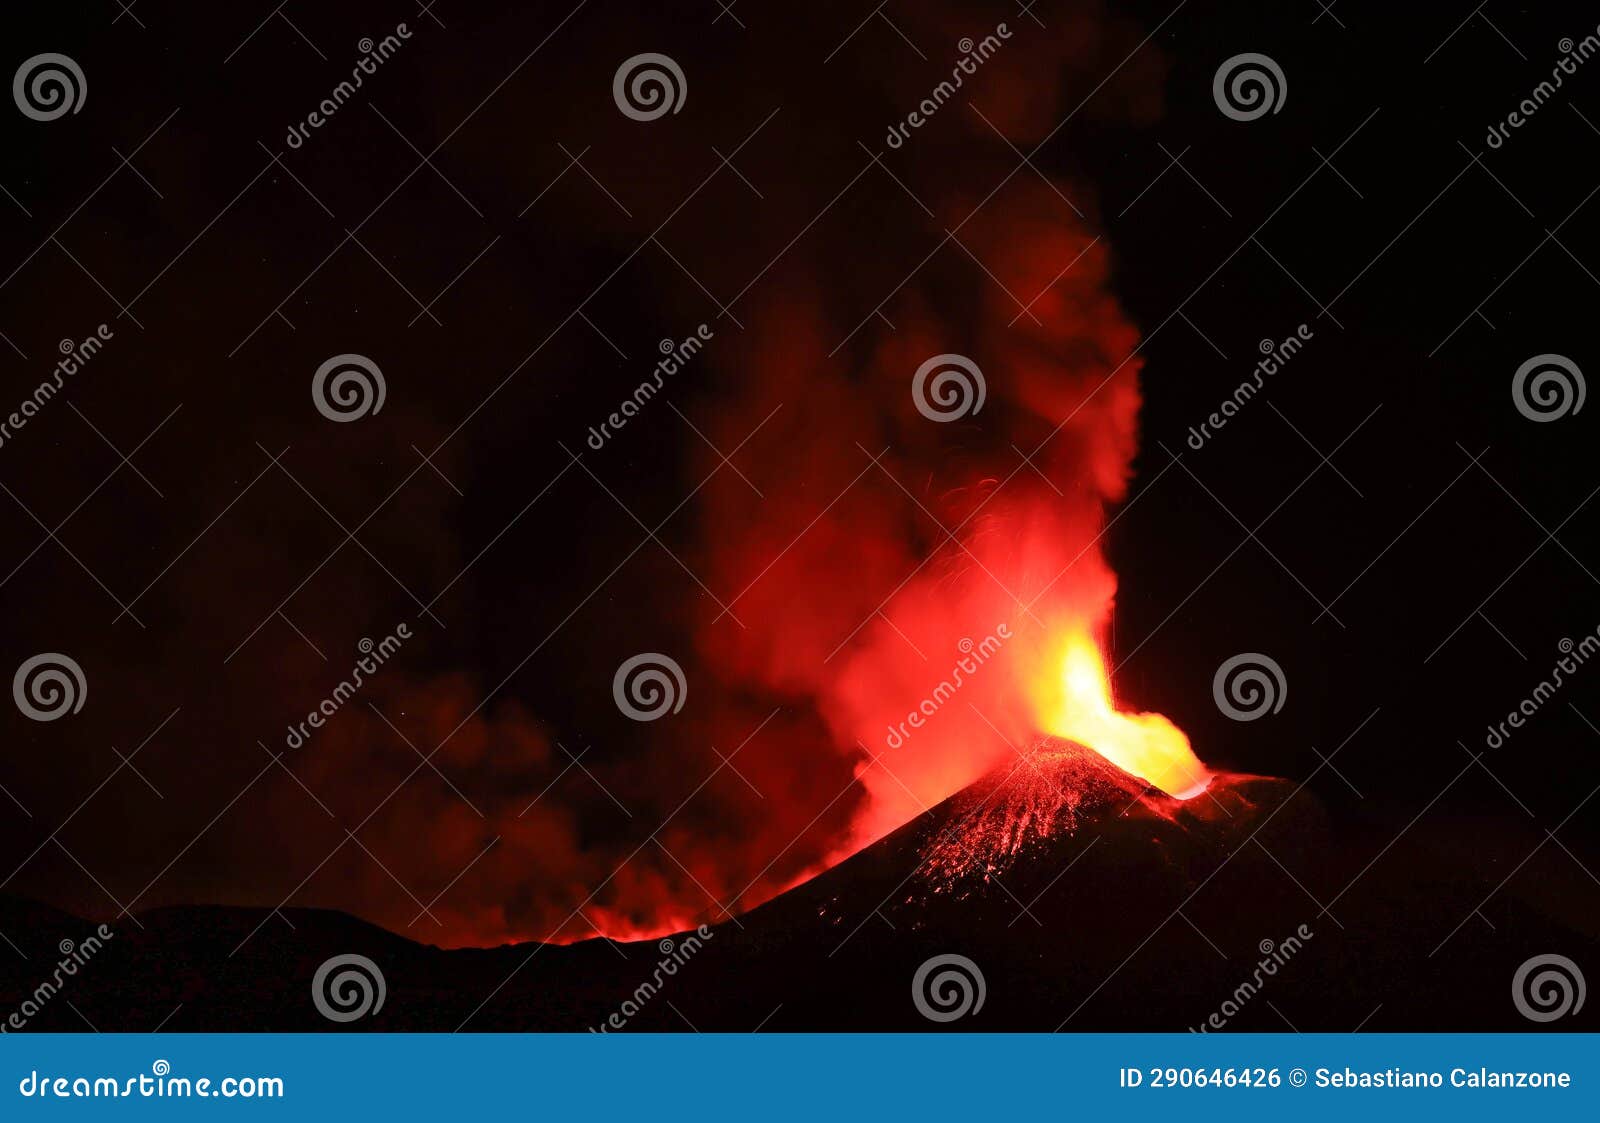 etna in eruzione durante la notte con sfondo scuro del cielo notturno panoramica del vulcano di sicilia: